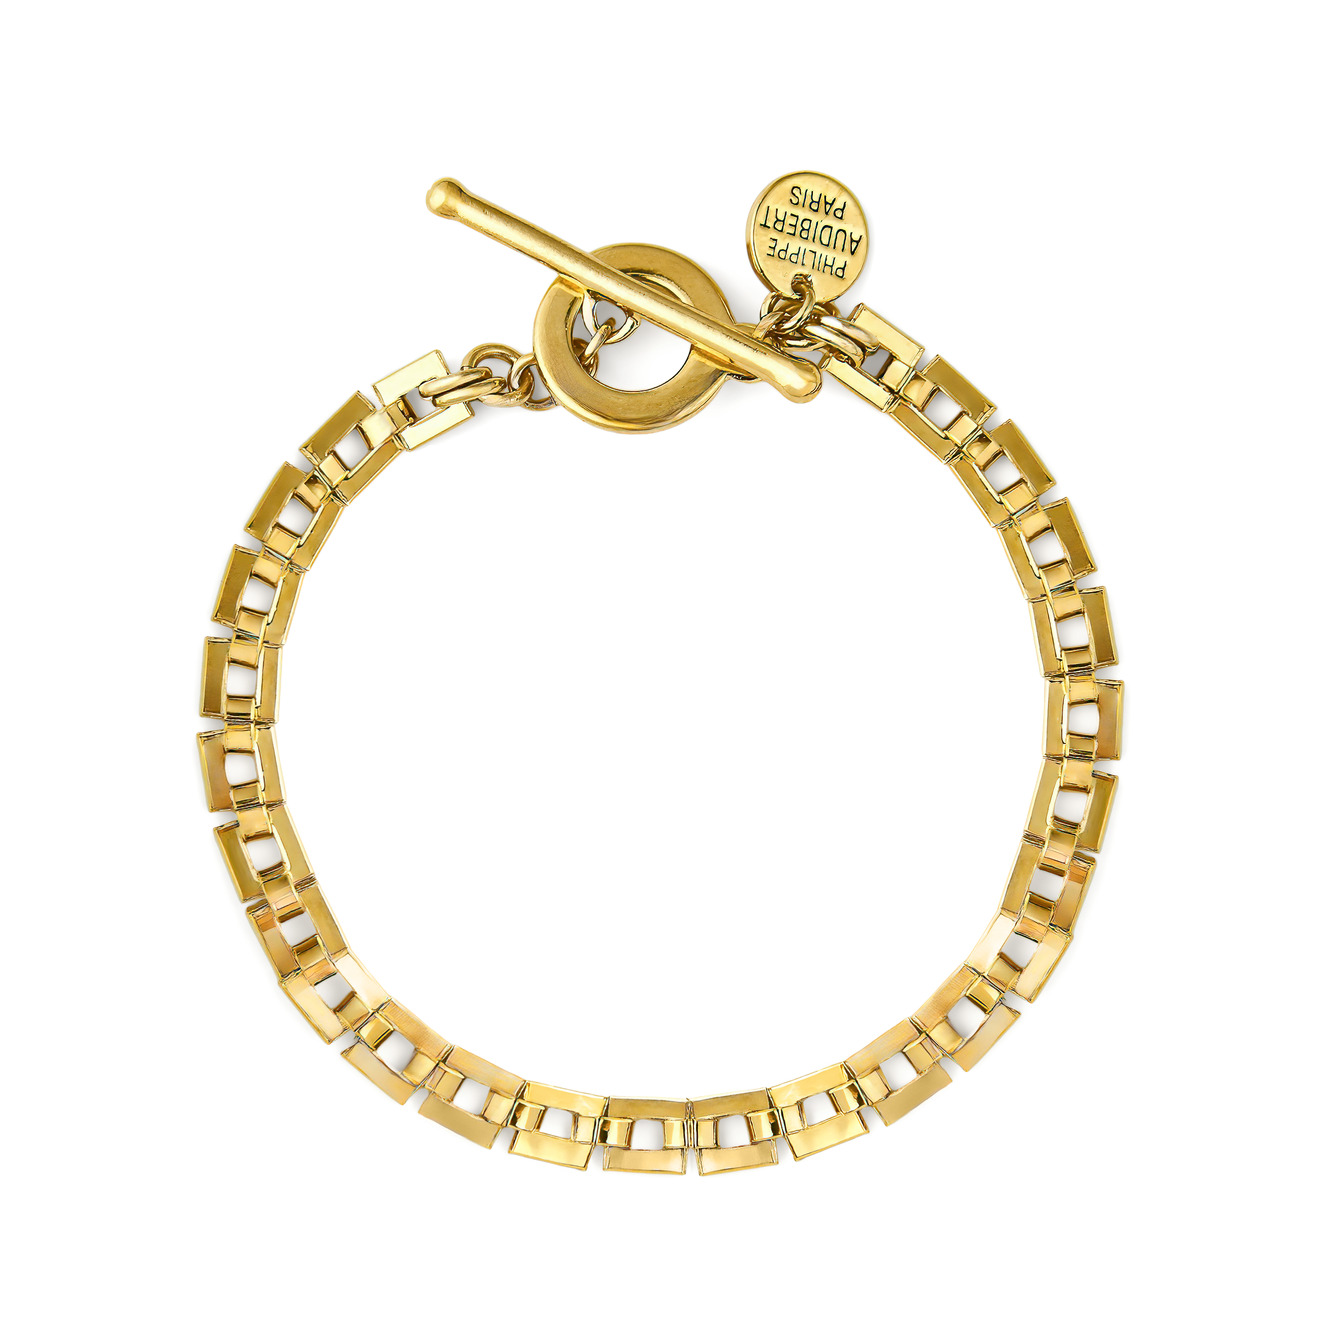 Philippe Audibert Позолоченный браслет-цепь Avner с квадратными звеньями philippe audibert биколорный браслет цепь asbury